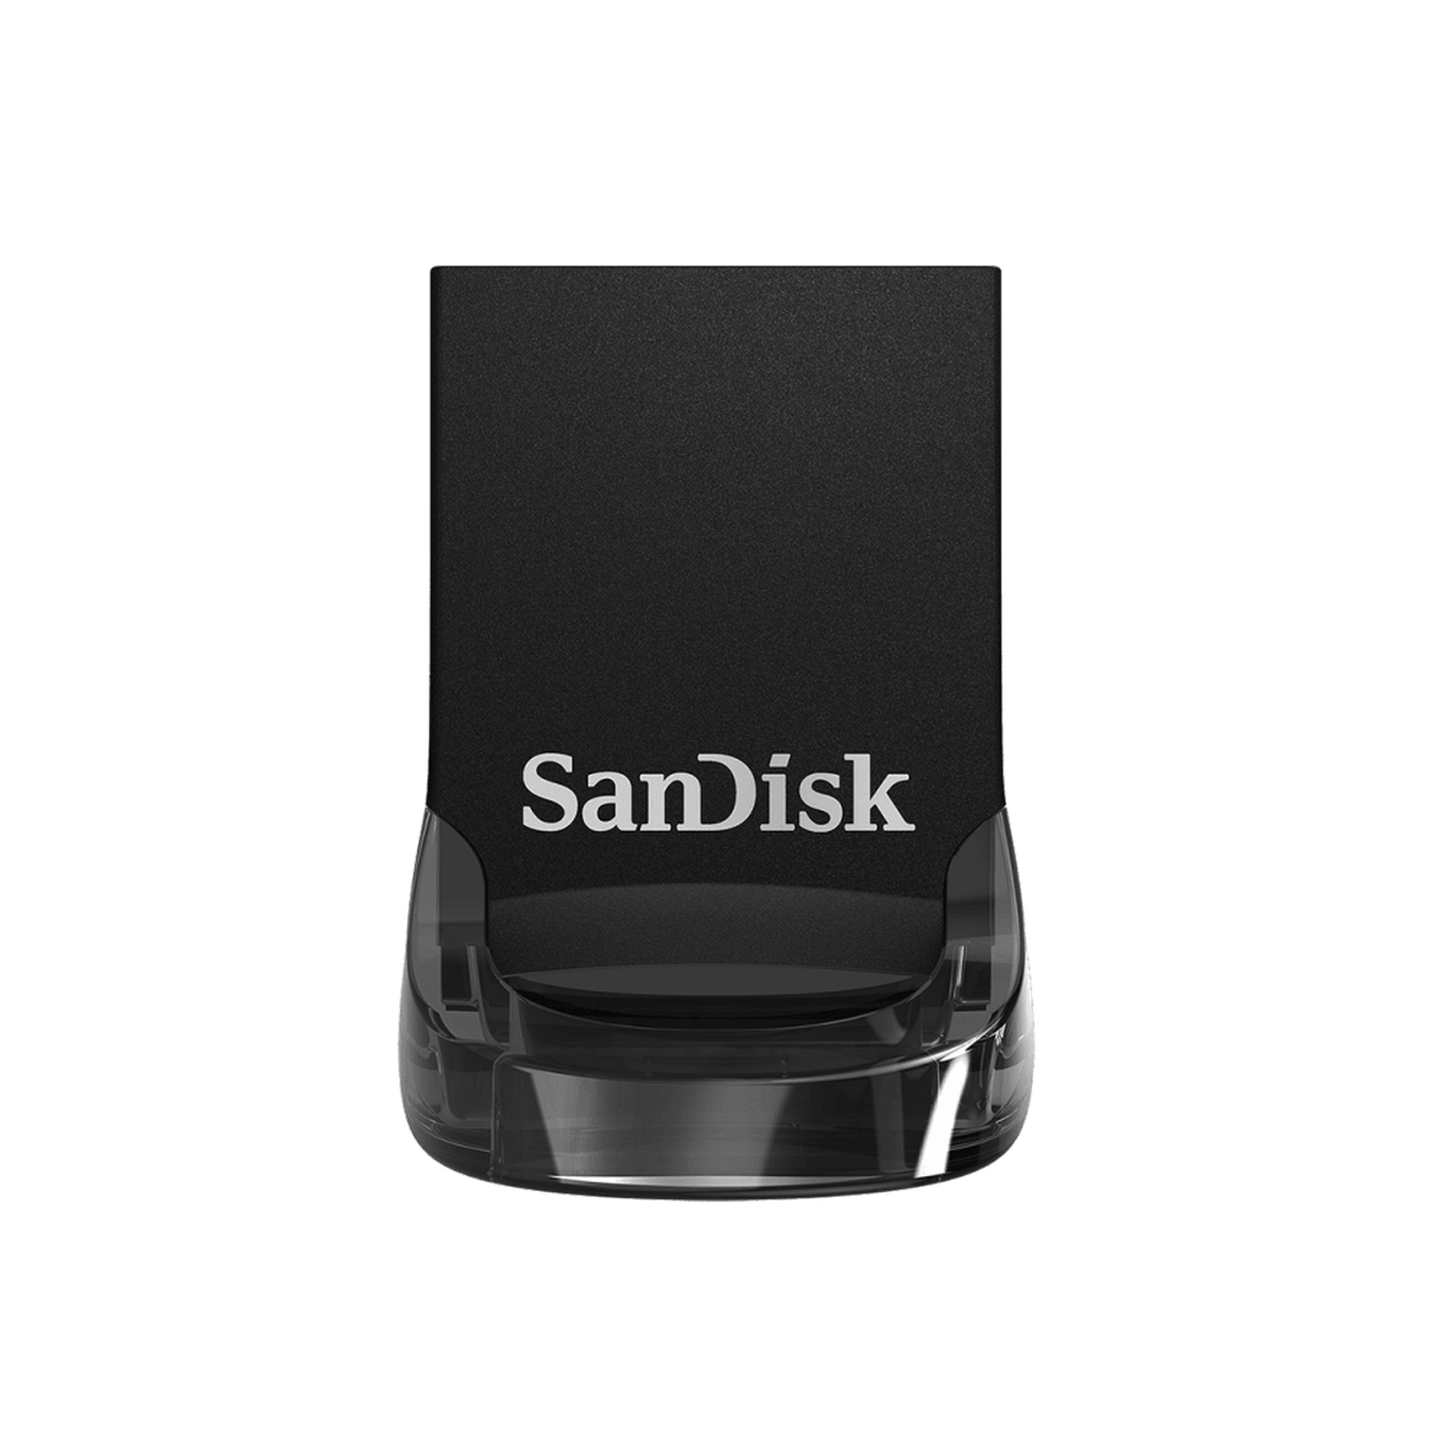 Memoria USB SanDisk Ultra Fit CZ430, 128GB, USB 3.0, Negro